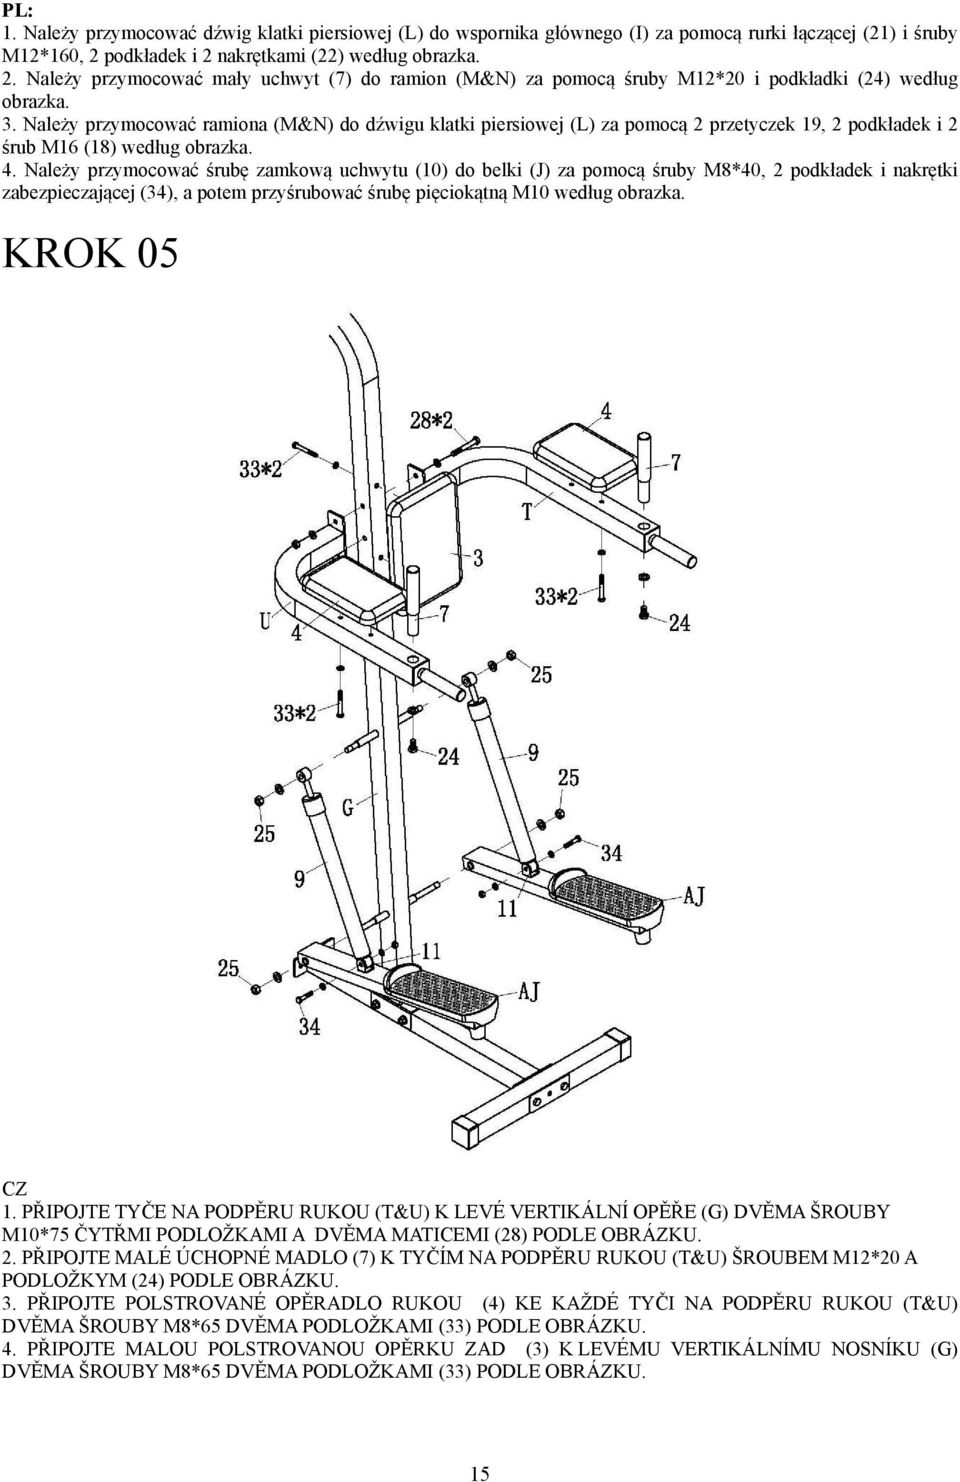 Należy przymocować ramiona (M&N) do dźwigu klatki piersiowej (L) za pomocą przetyczek 9, podkładek i śrub M6 (8) według obrazka. 4.